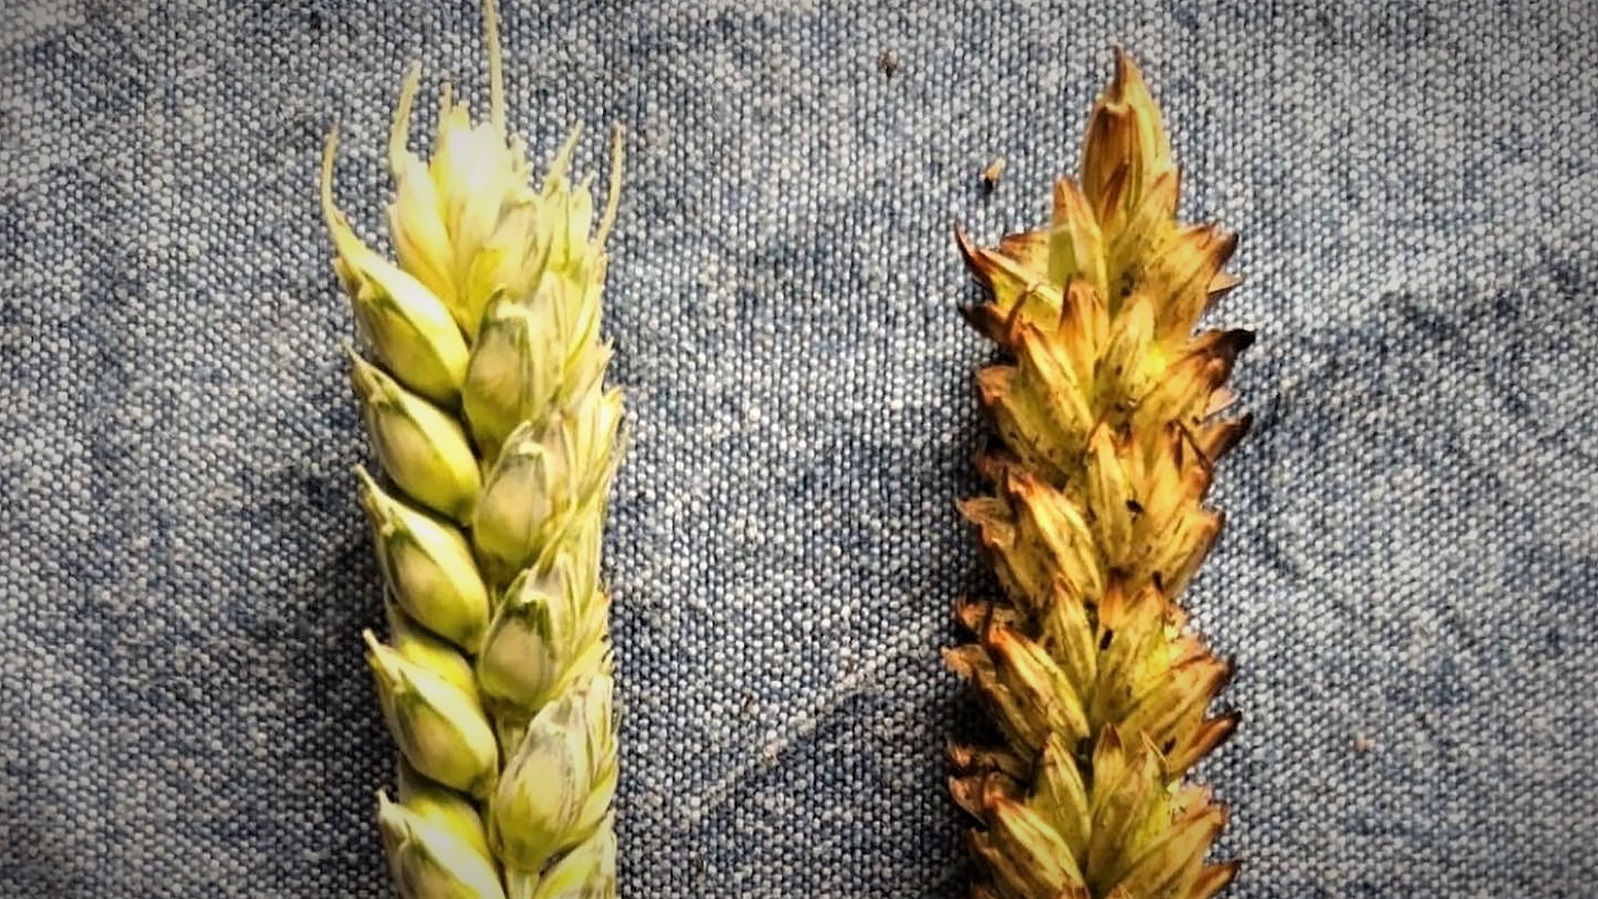 Nærbillede af korn, hvoraf det ene er før afbrænding og det andet efter